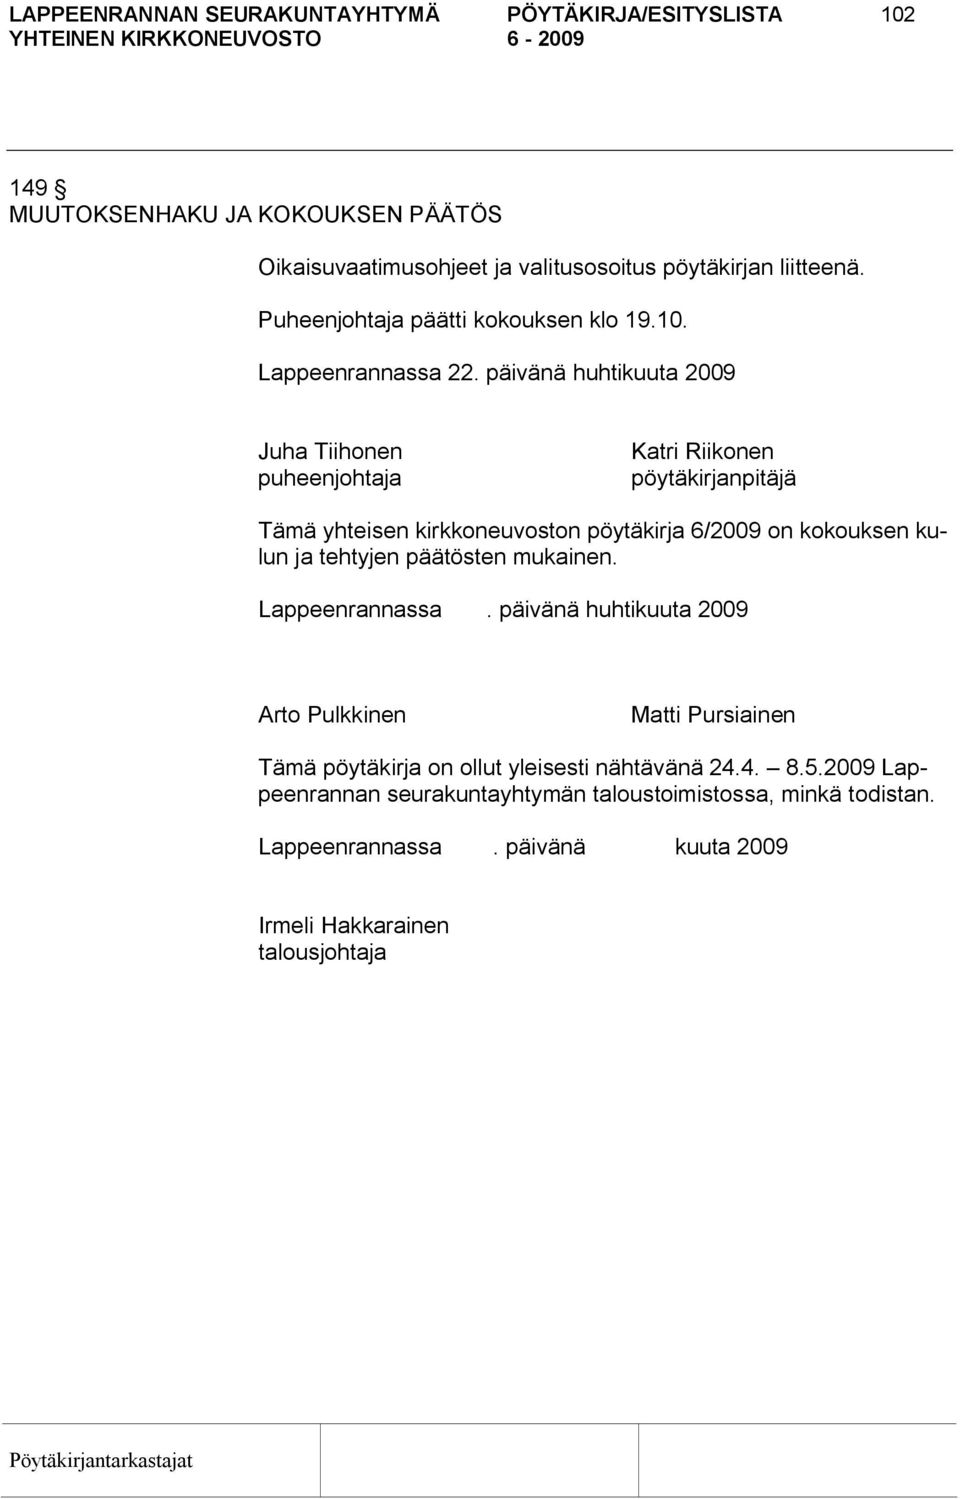 päivänä huhtikuuta 2009 Juha Tiihonen puheenjohtaja Katri Riikonen pöytäkirjanpitäjä Tämä yhteisen kirkkoneuvoston pöytäkirja 6/2009 on kokouksen kulun ja tehtyjen